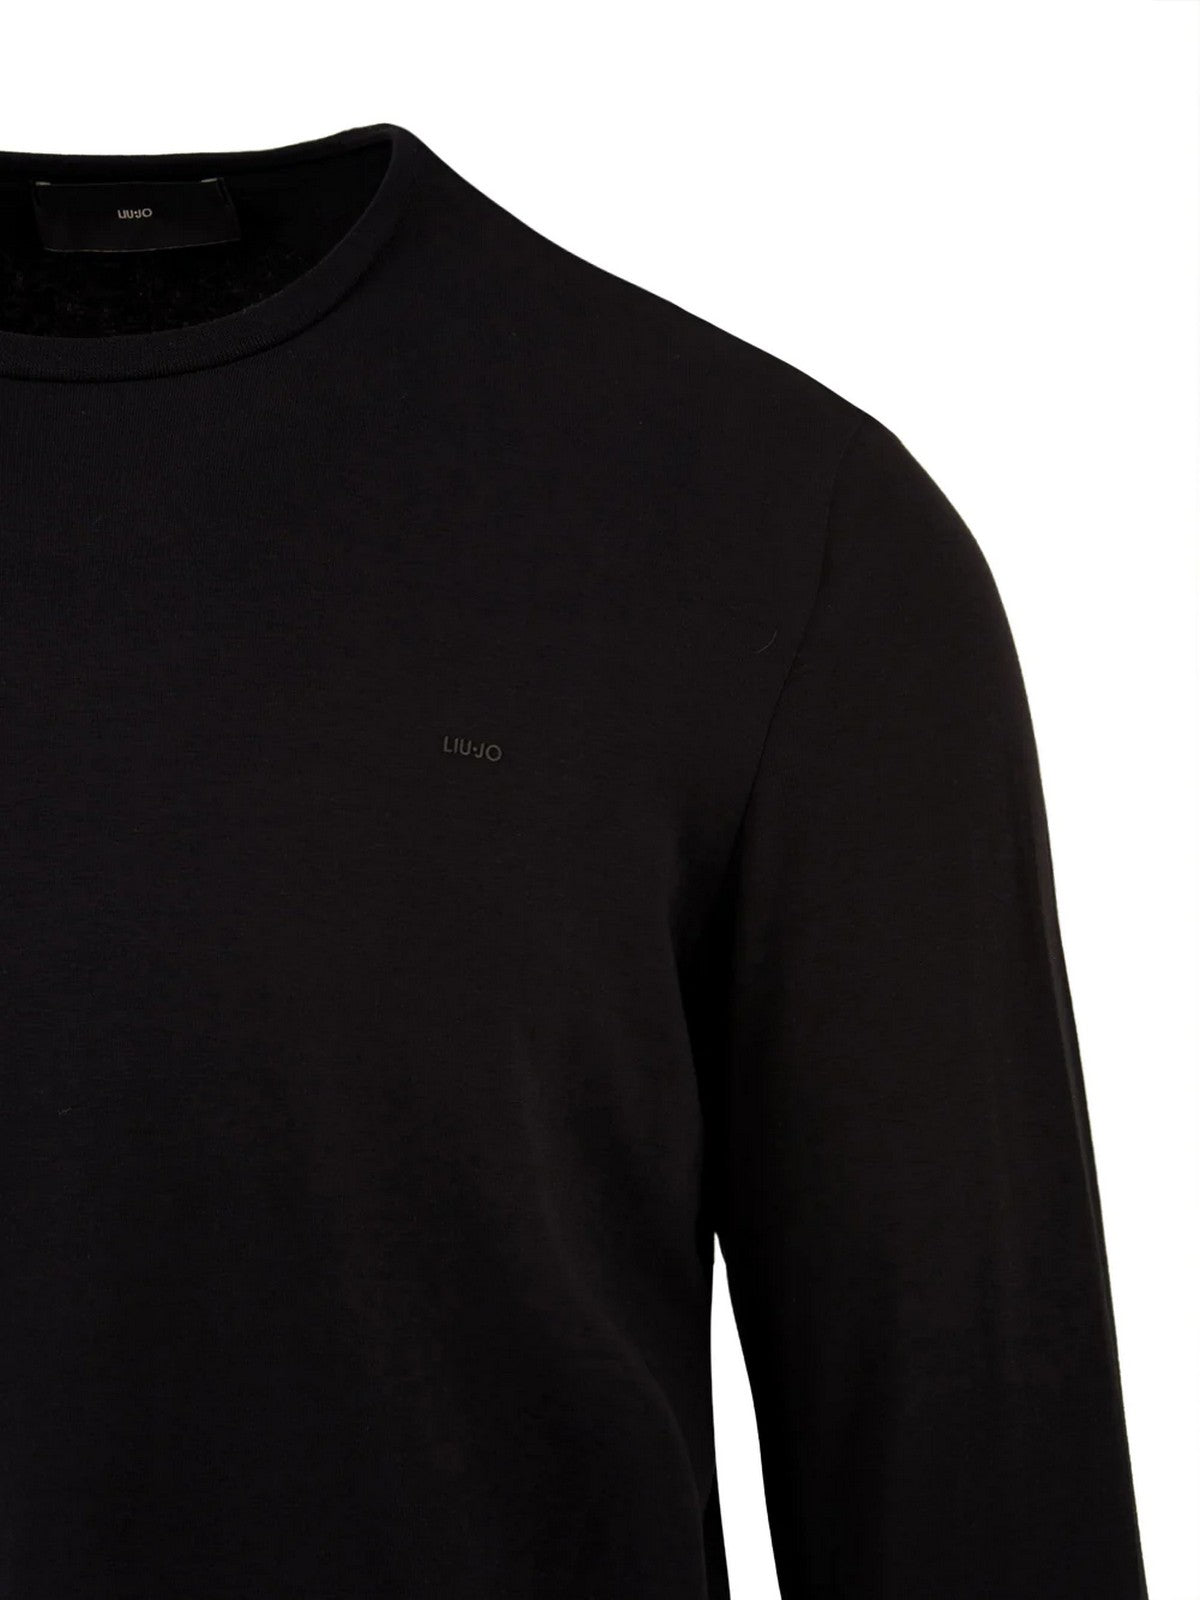 LIU JO HOMME T-Shirt et Polo M000P204LONGBRAND 900 Noir